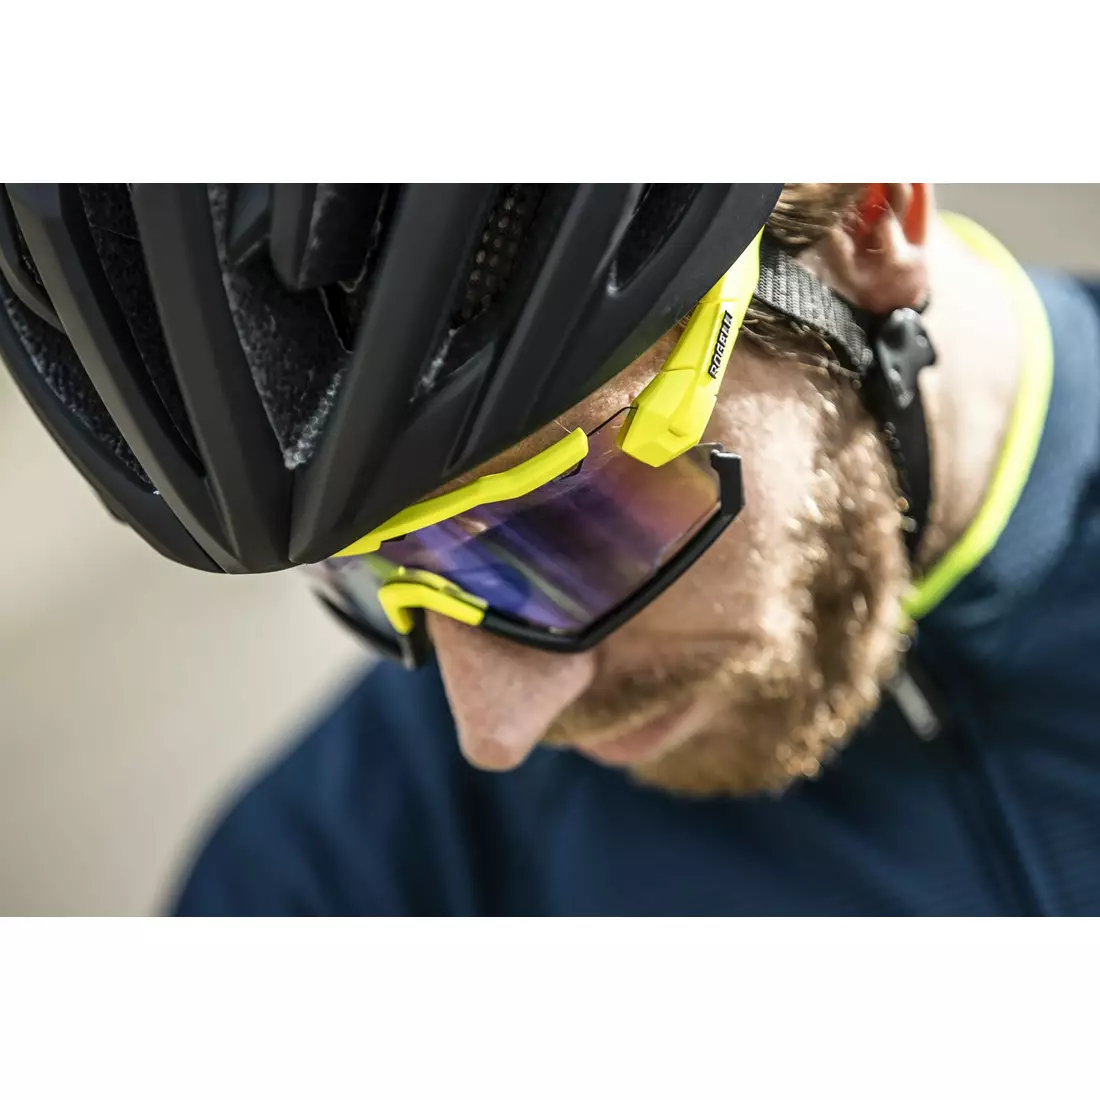 ROGELLI ochelari de protecție pentru sport cu lentile interschimbabile SWITCH  fluor galben